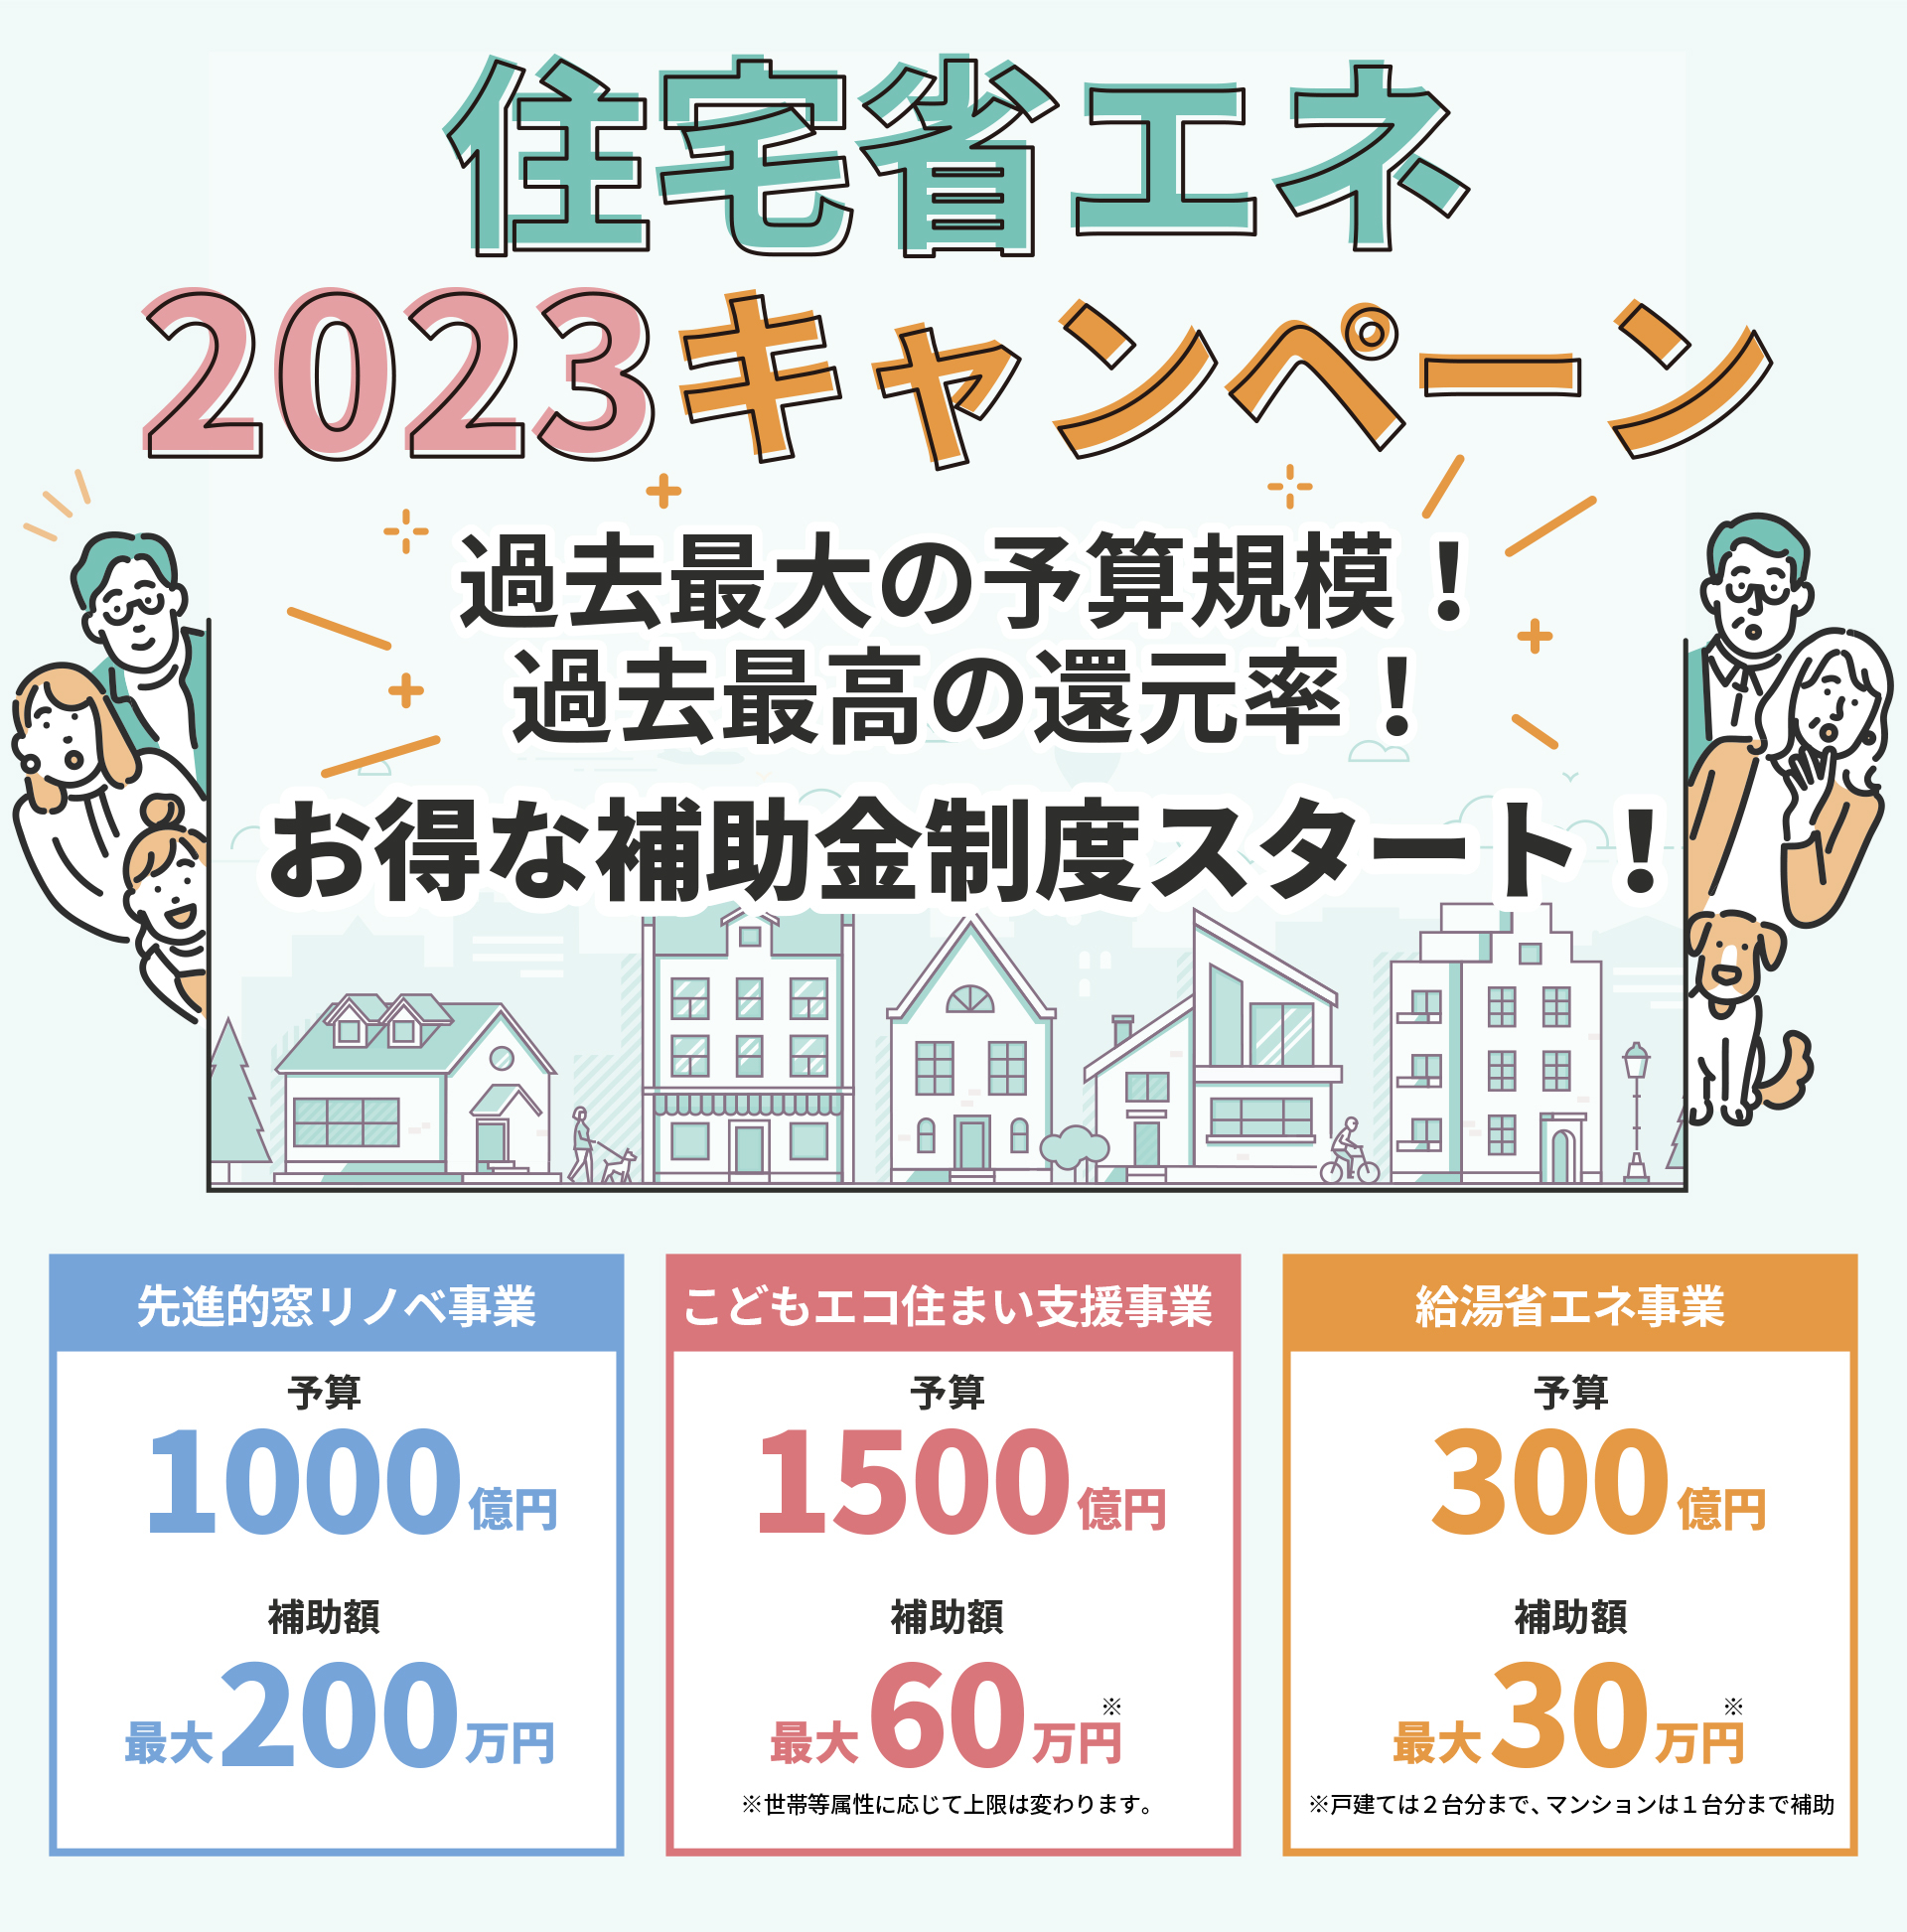 住宅省エネ2023キャンペーンについて | コラム | 名古屋のリフォームとリノベーション モアリビング